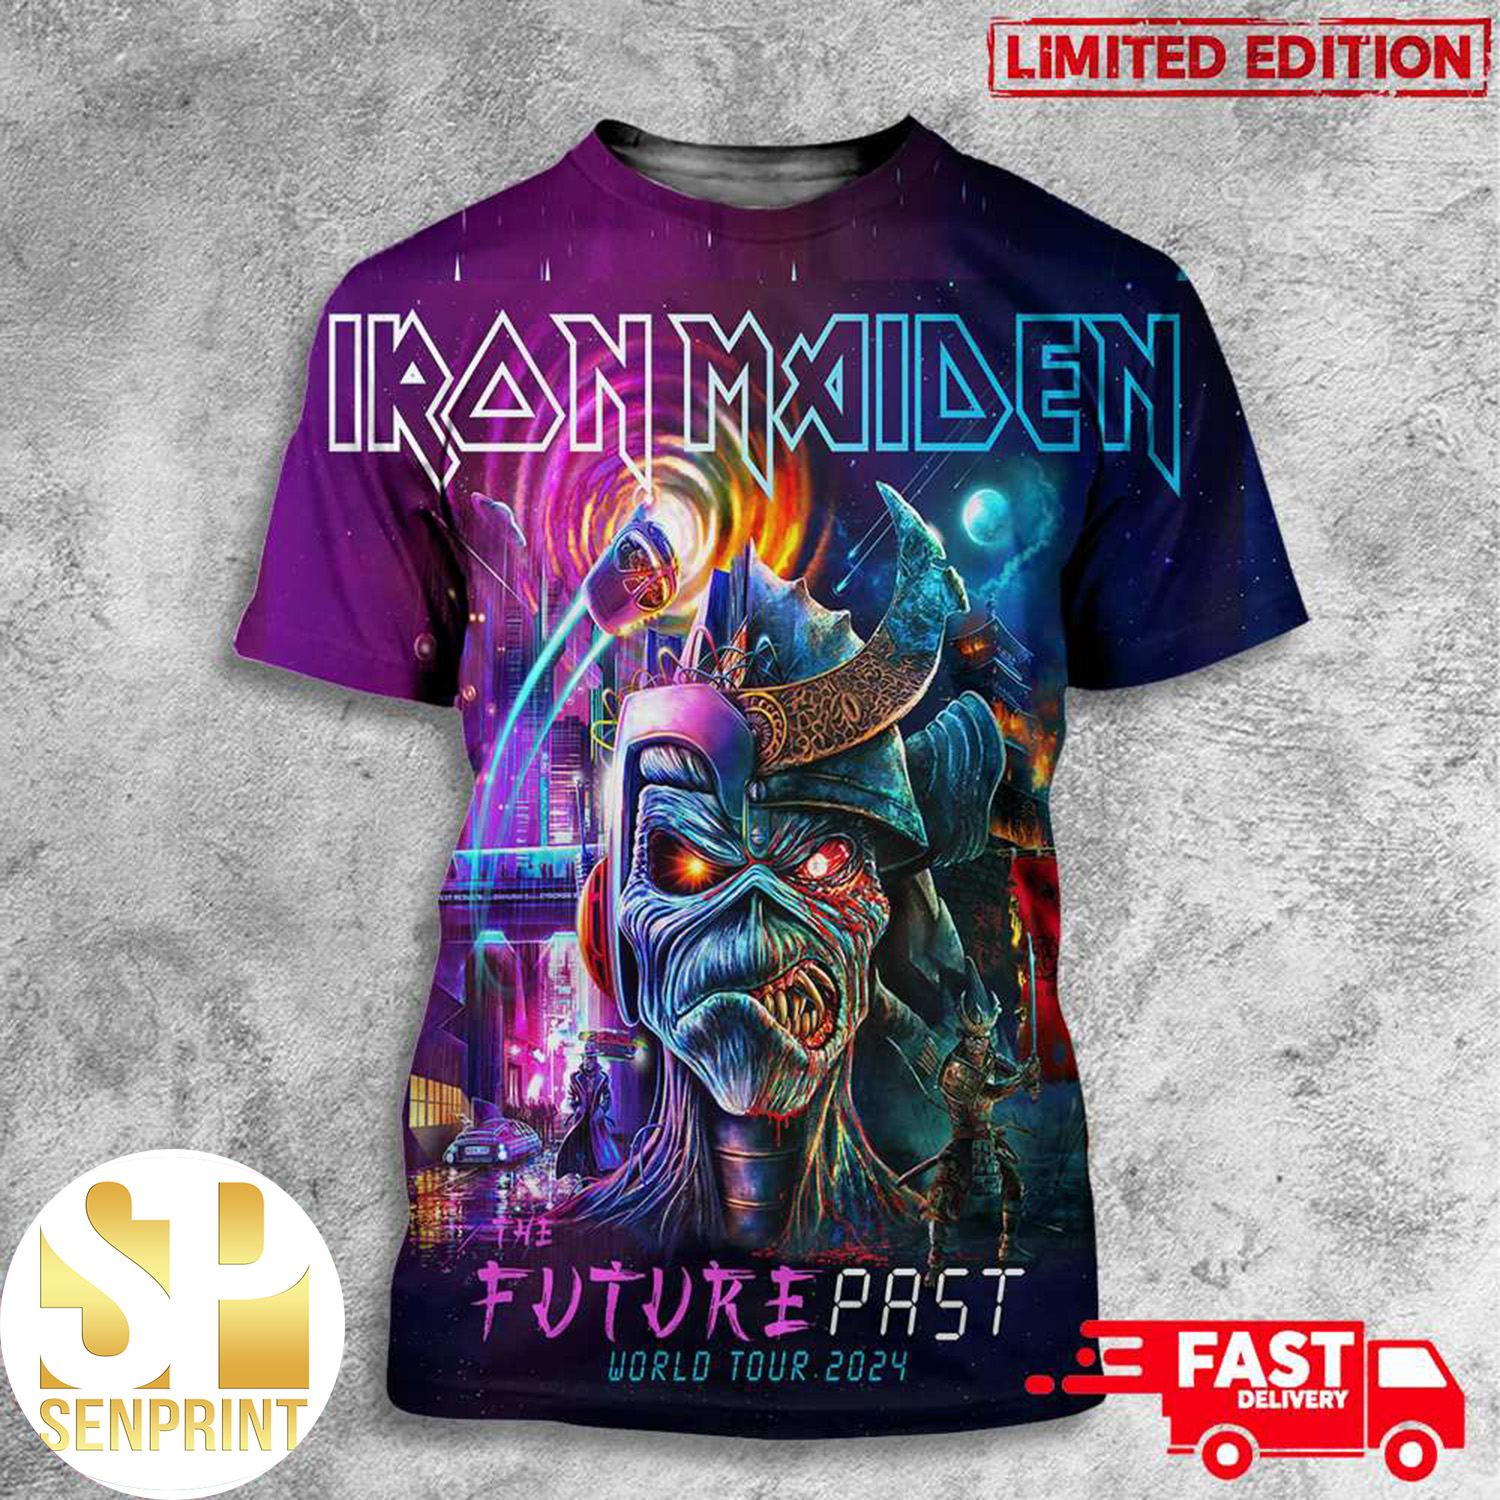 Iron Maiden The Future Past Tour World Tour 2024 Shirt